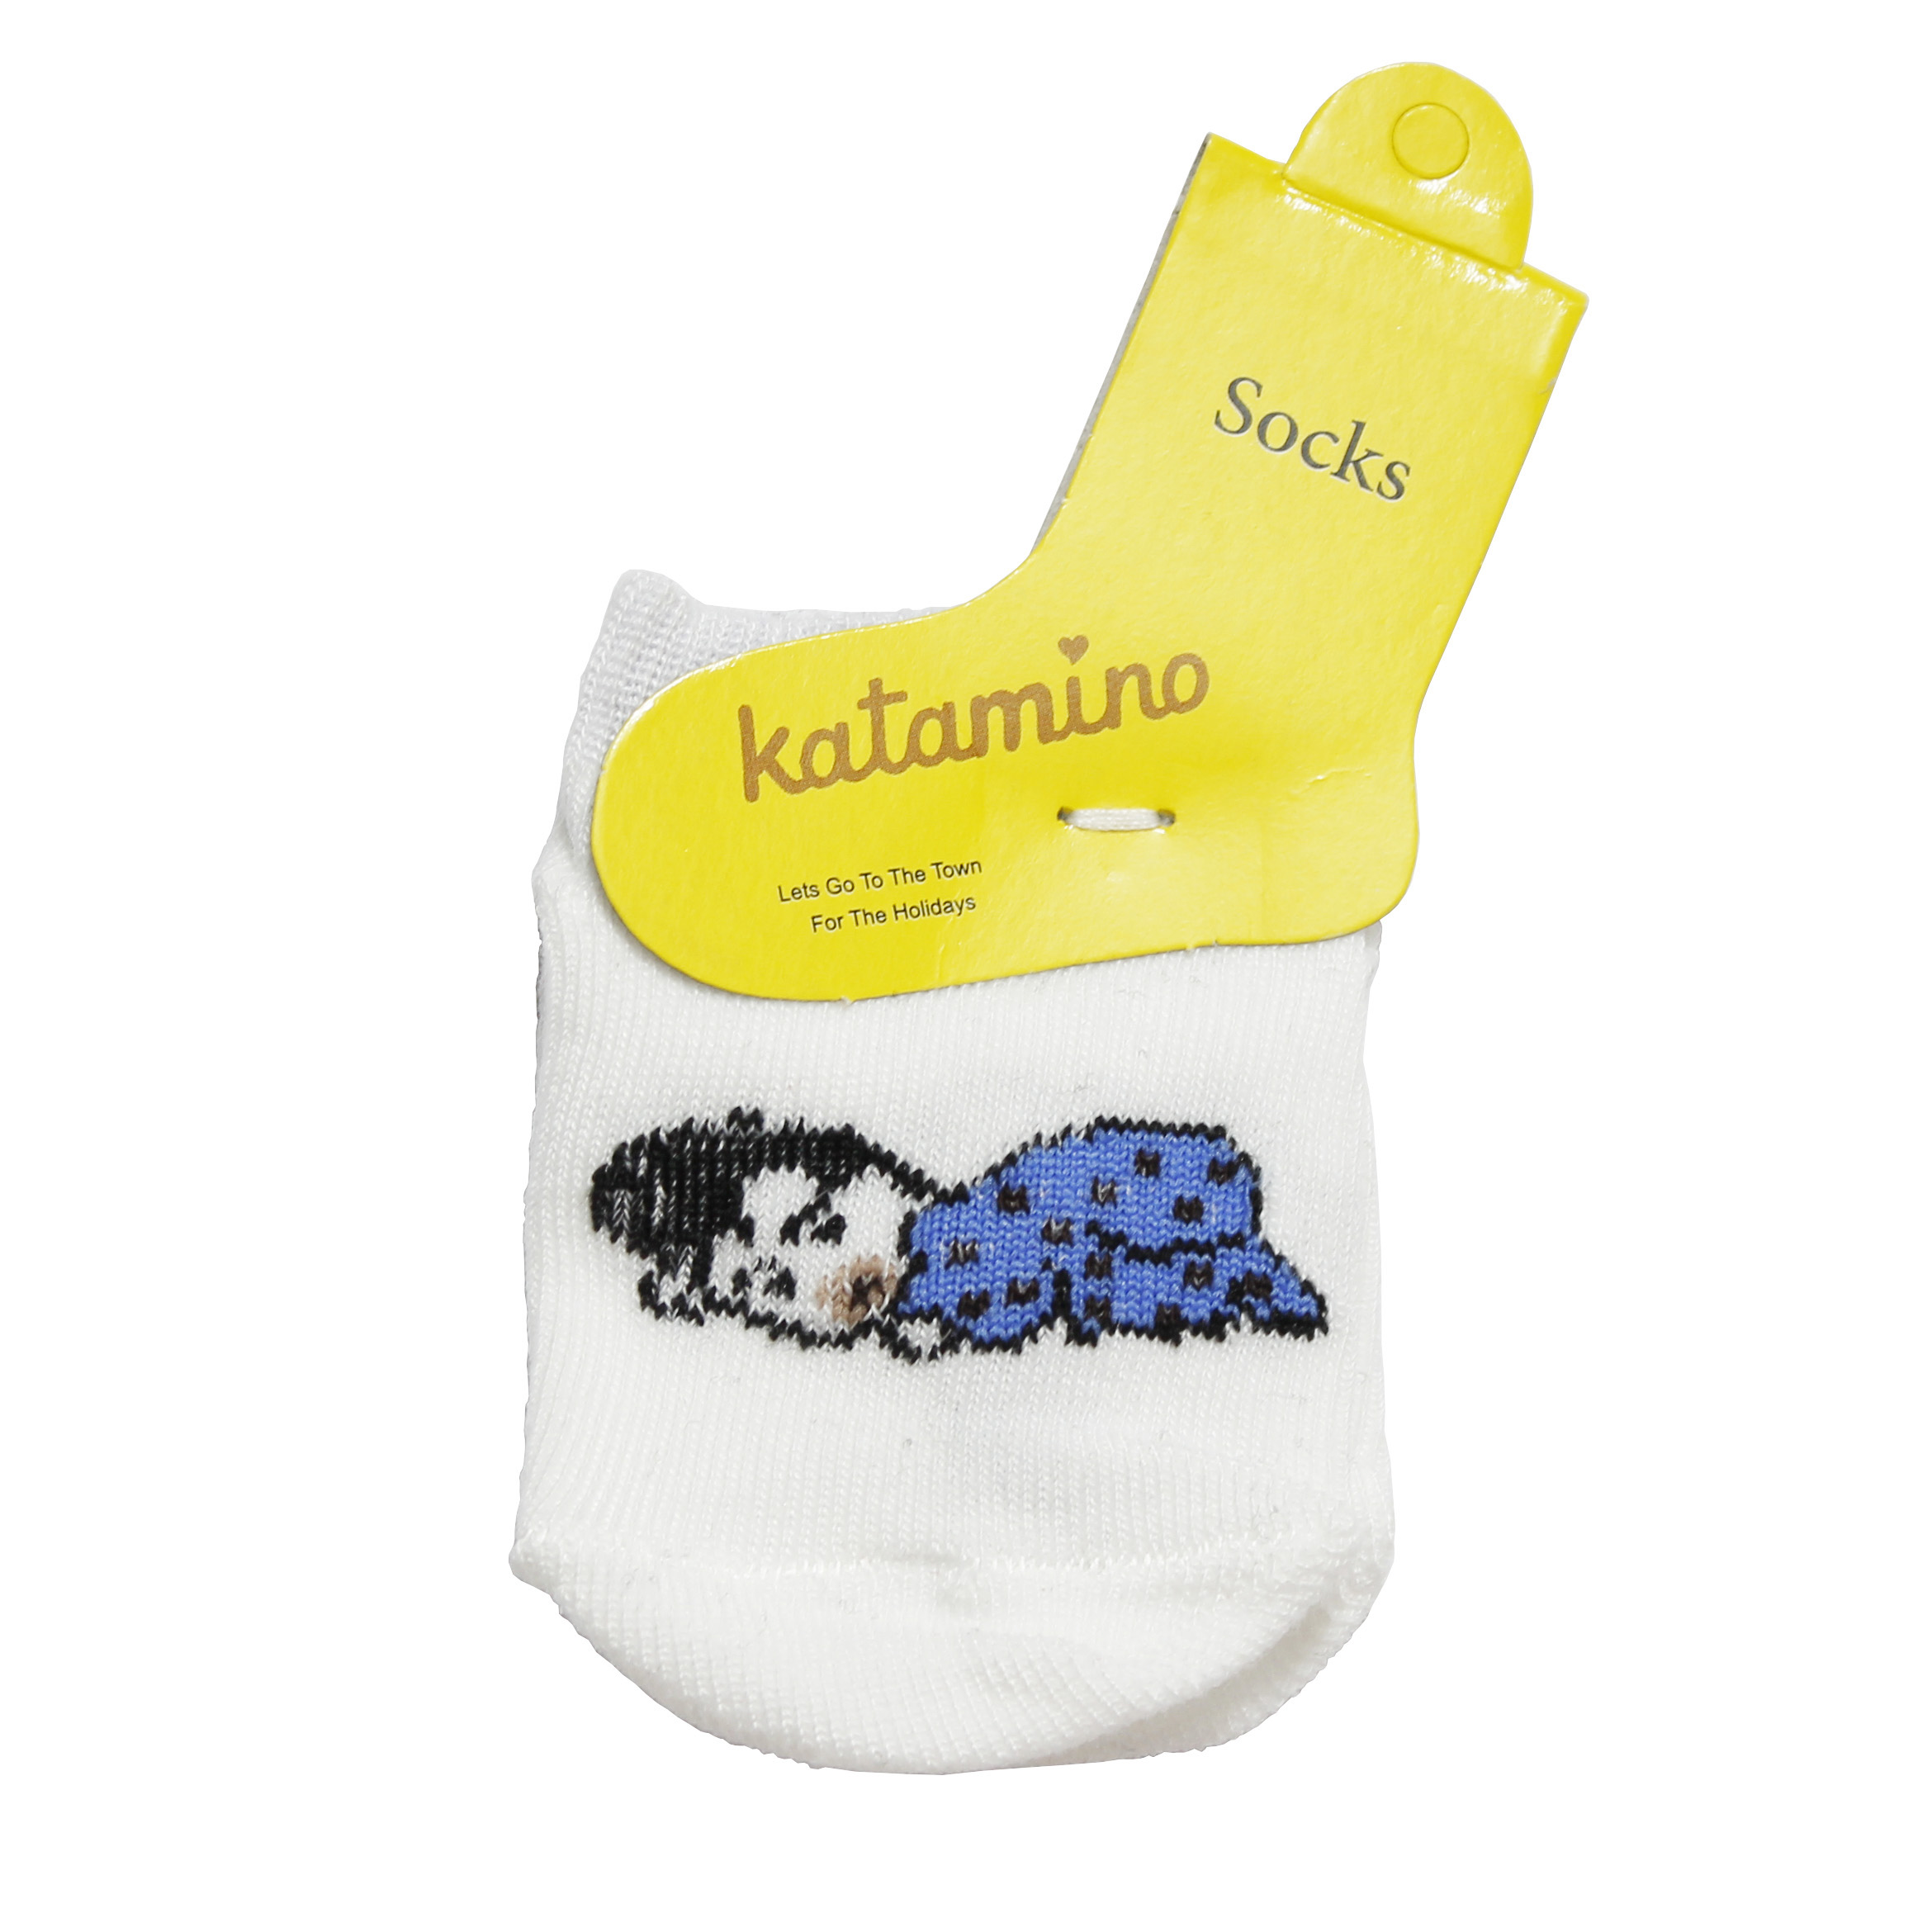 جوراب نوزادی کاتامینو کد B400